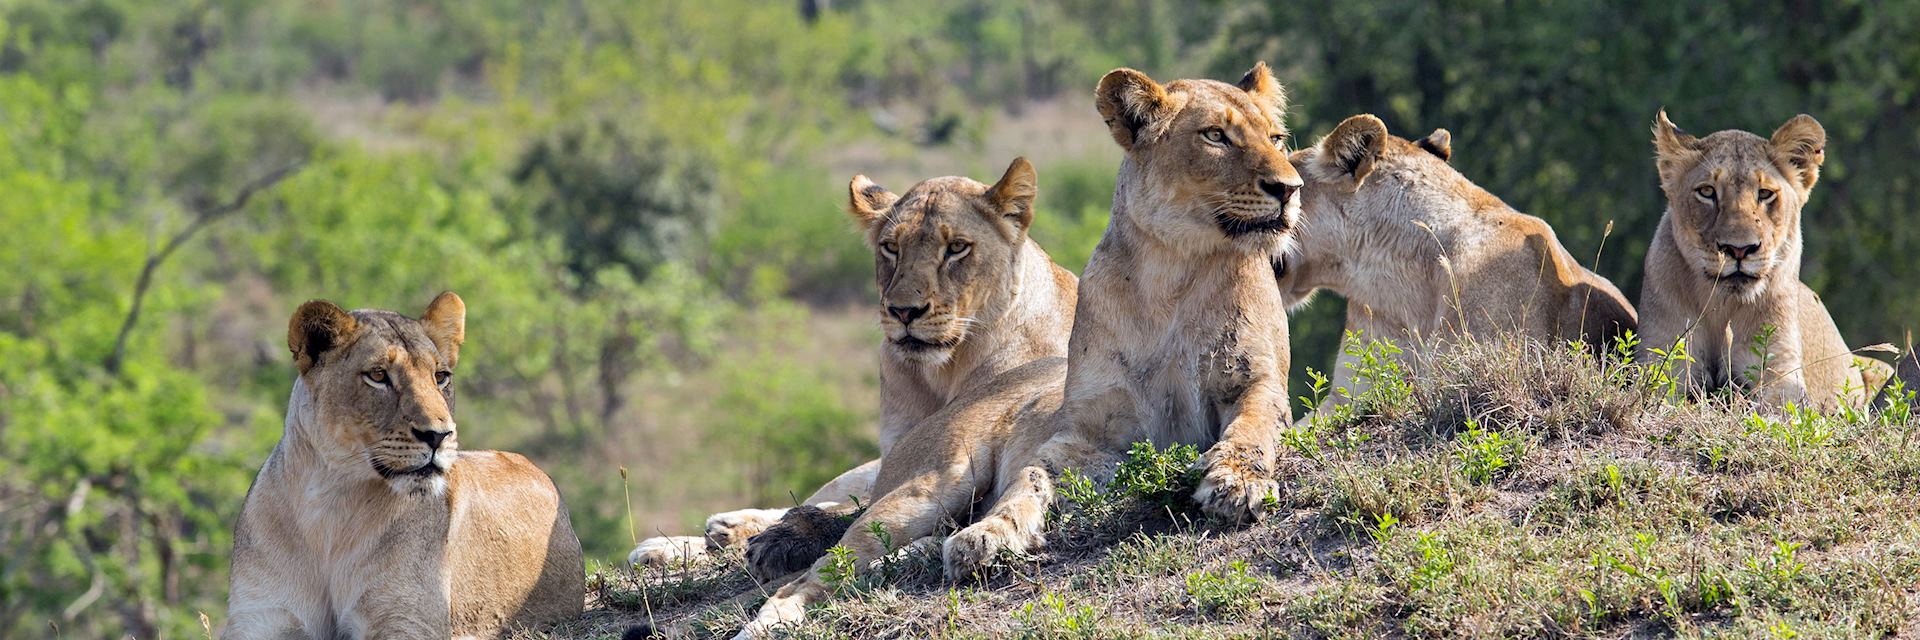 Lion, Sabi Sands Game Reserve, South Africa